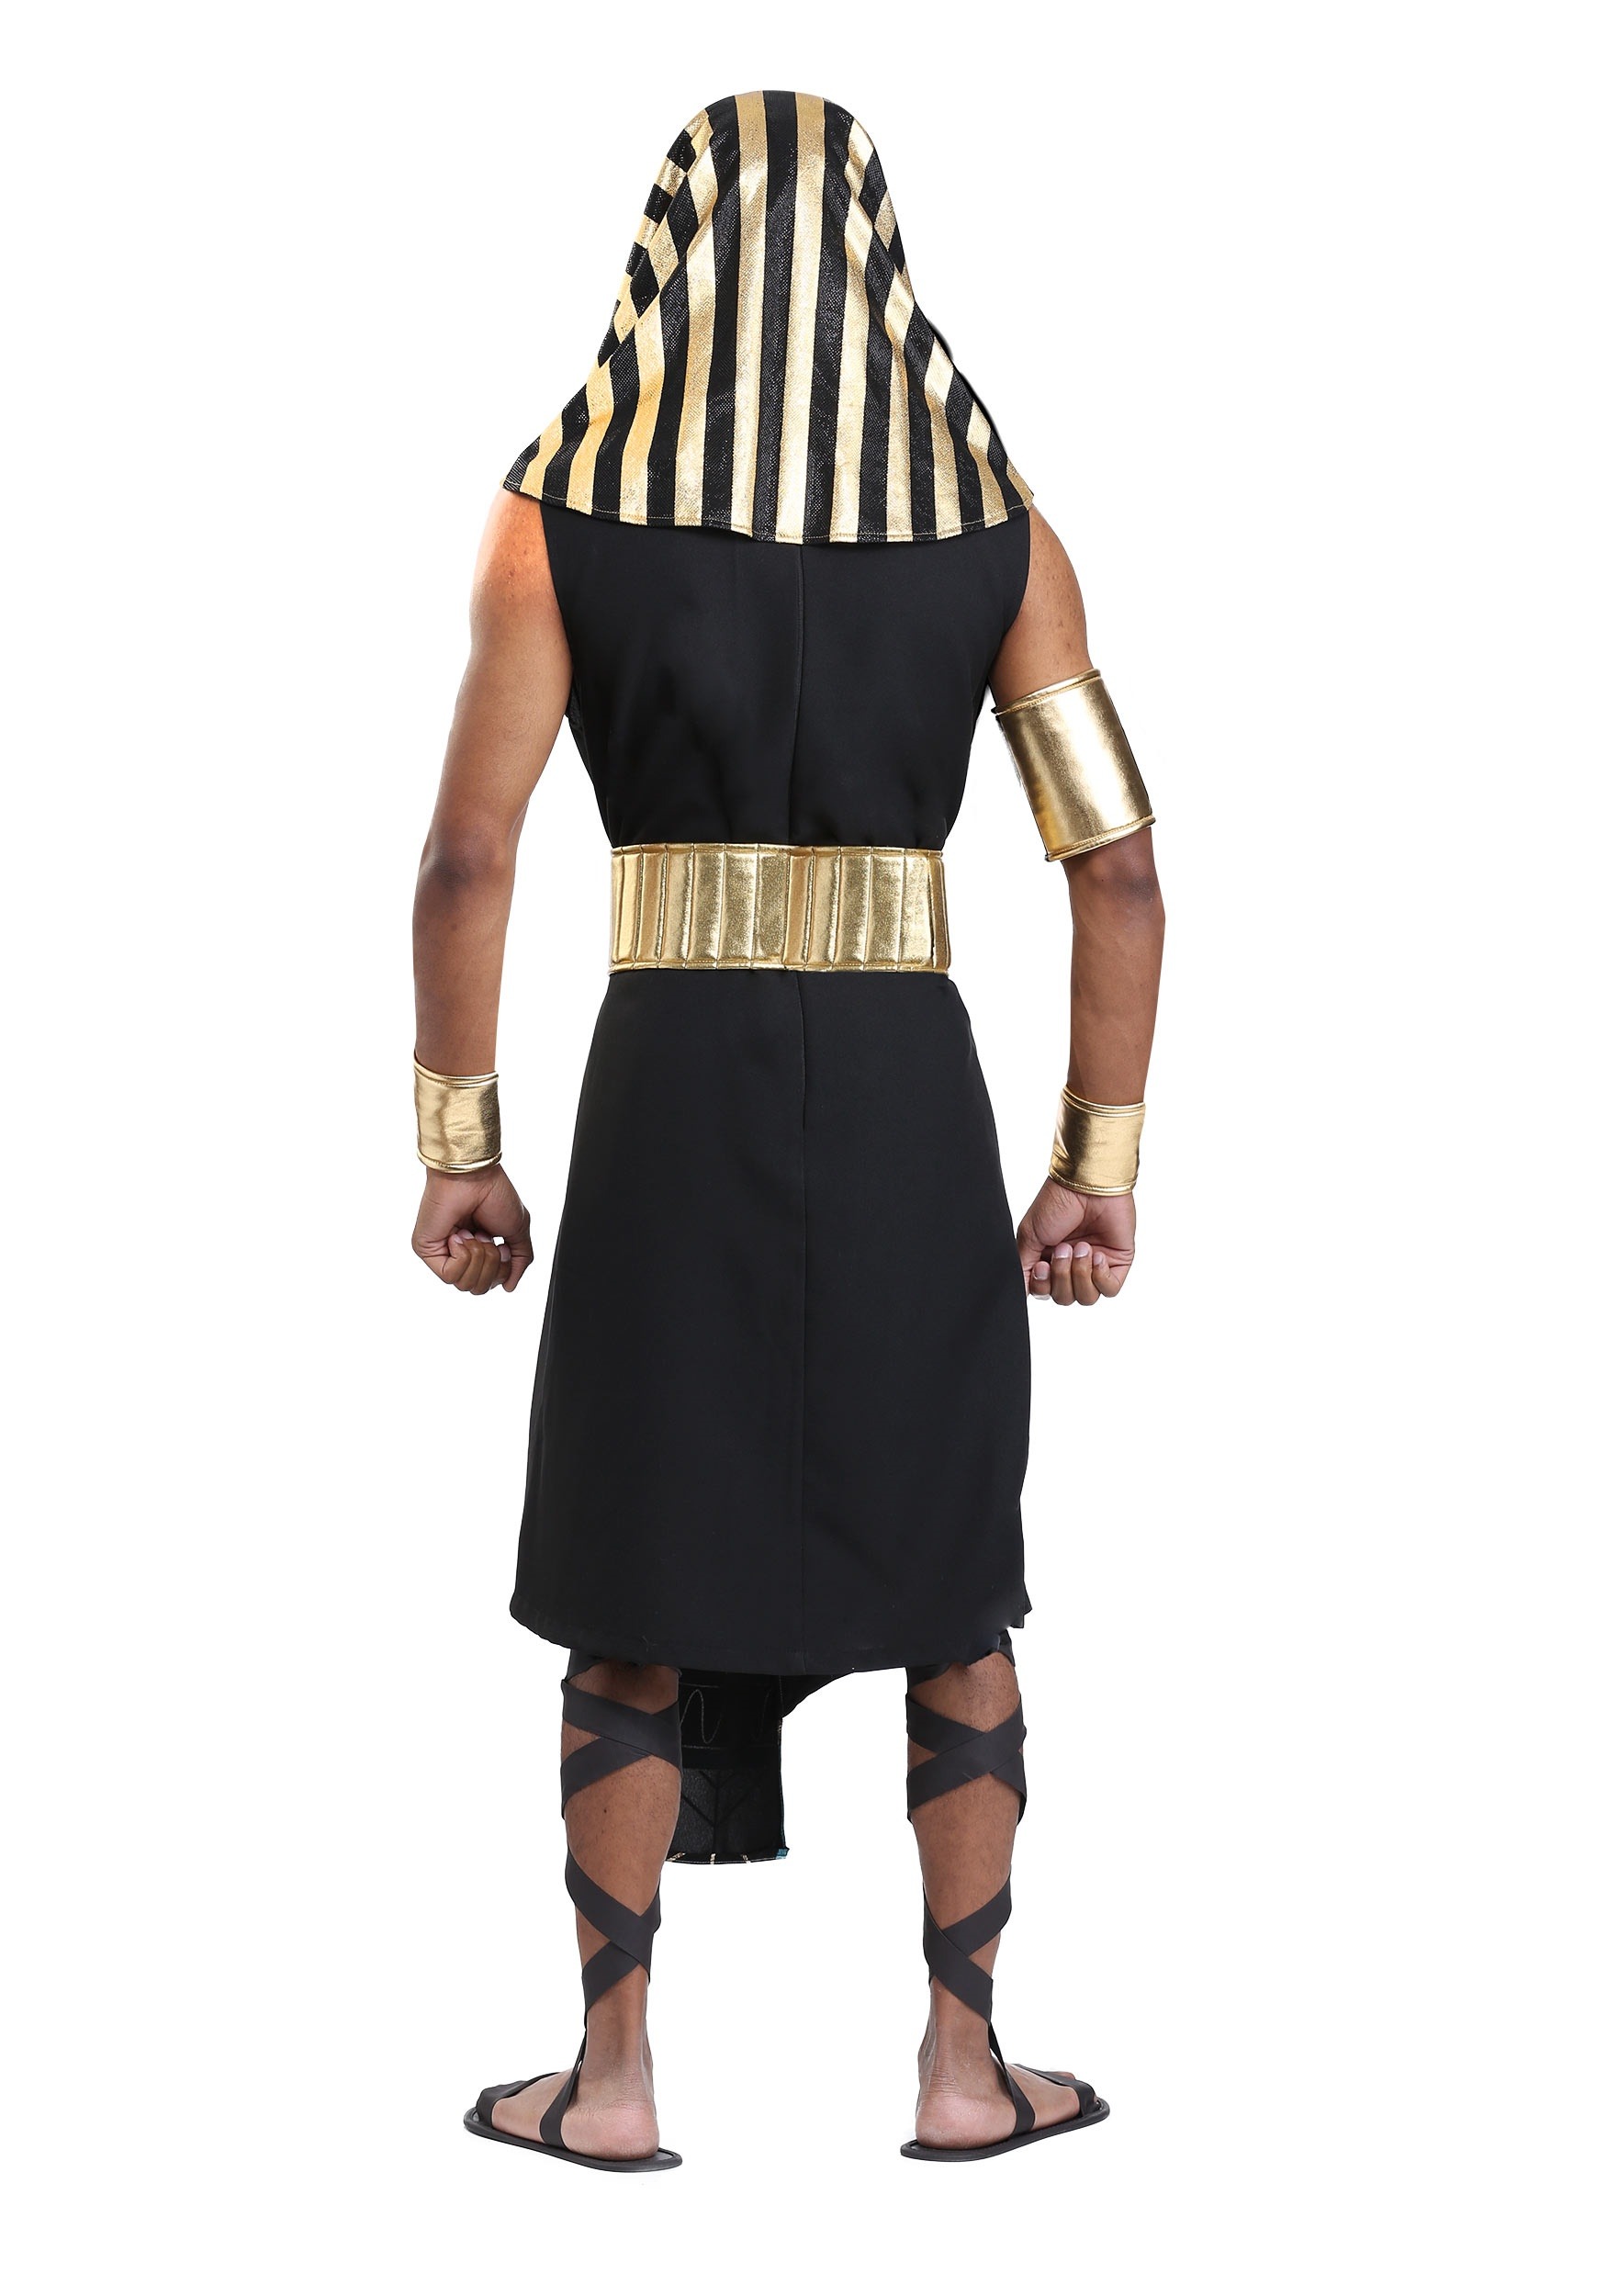 Egyptian Dark Pharaoh Costume For Men